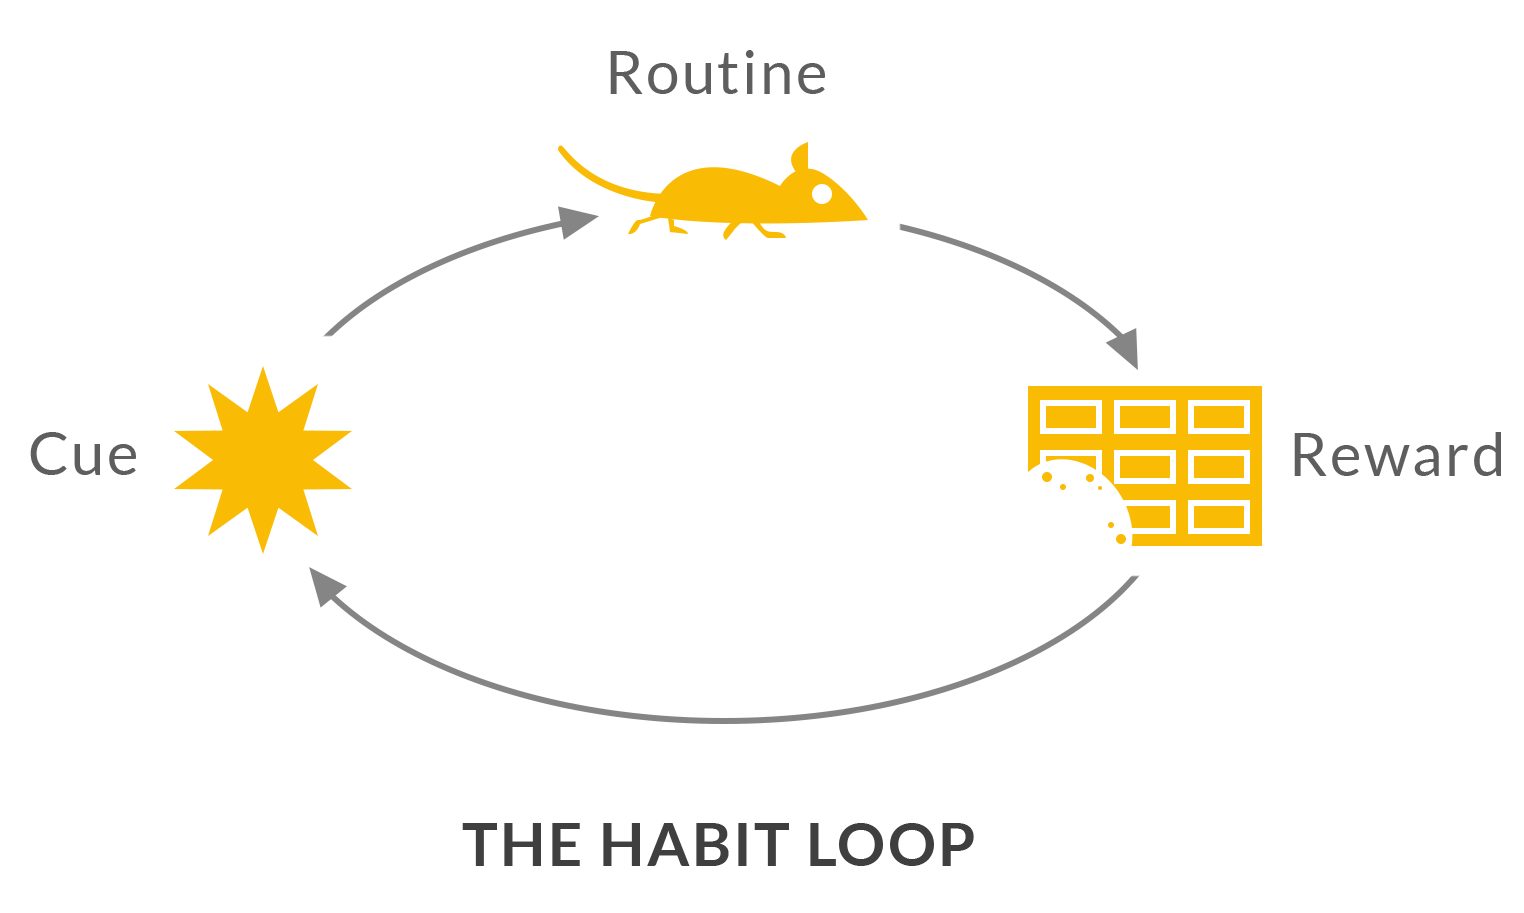 the-habit-loop